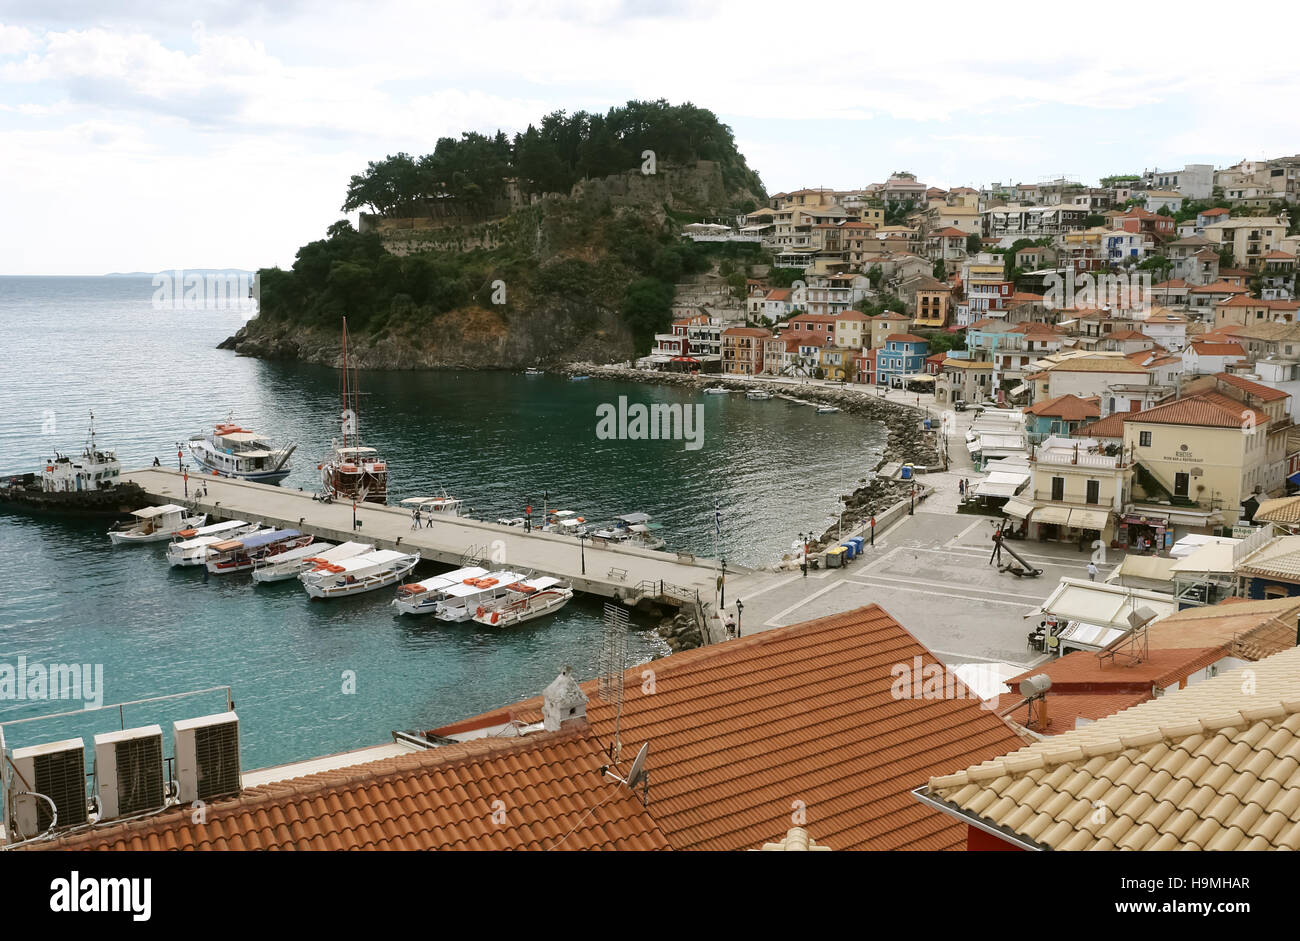 Parga, Grèce, 09 mai 2013 : vue sur la côte grecque avec des bateaux dans la baie de la ville de Parga, sur la côte de la Mer Ionienne. Banque D'Images